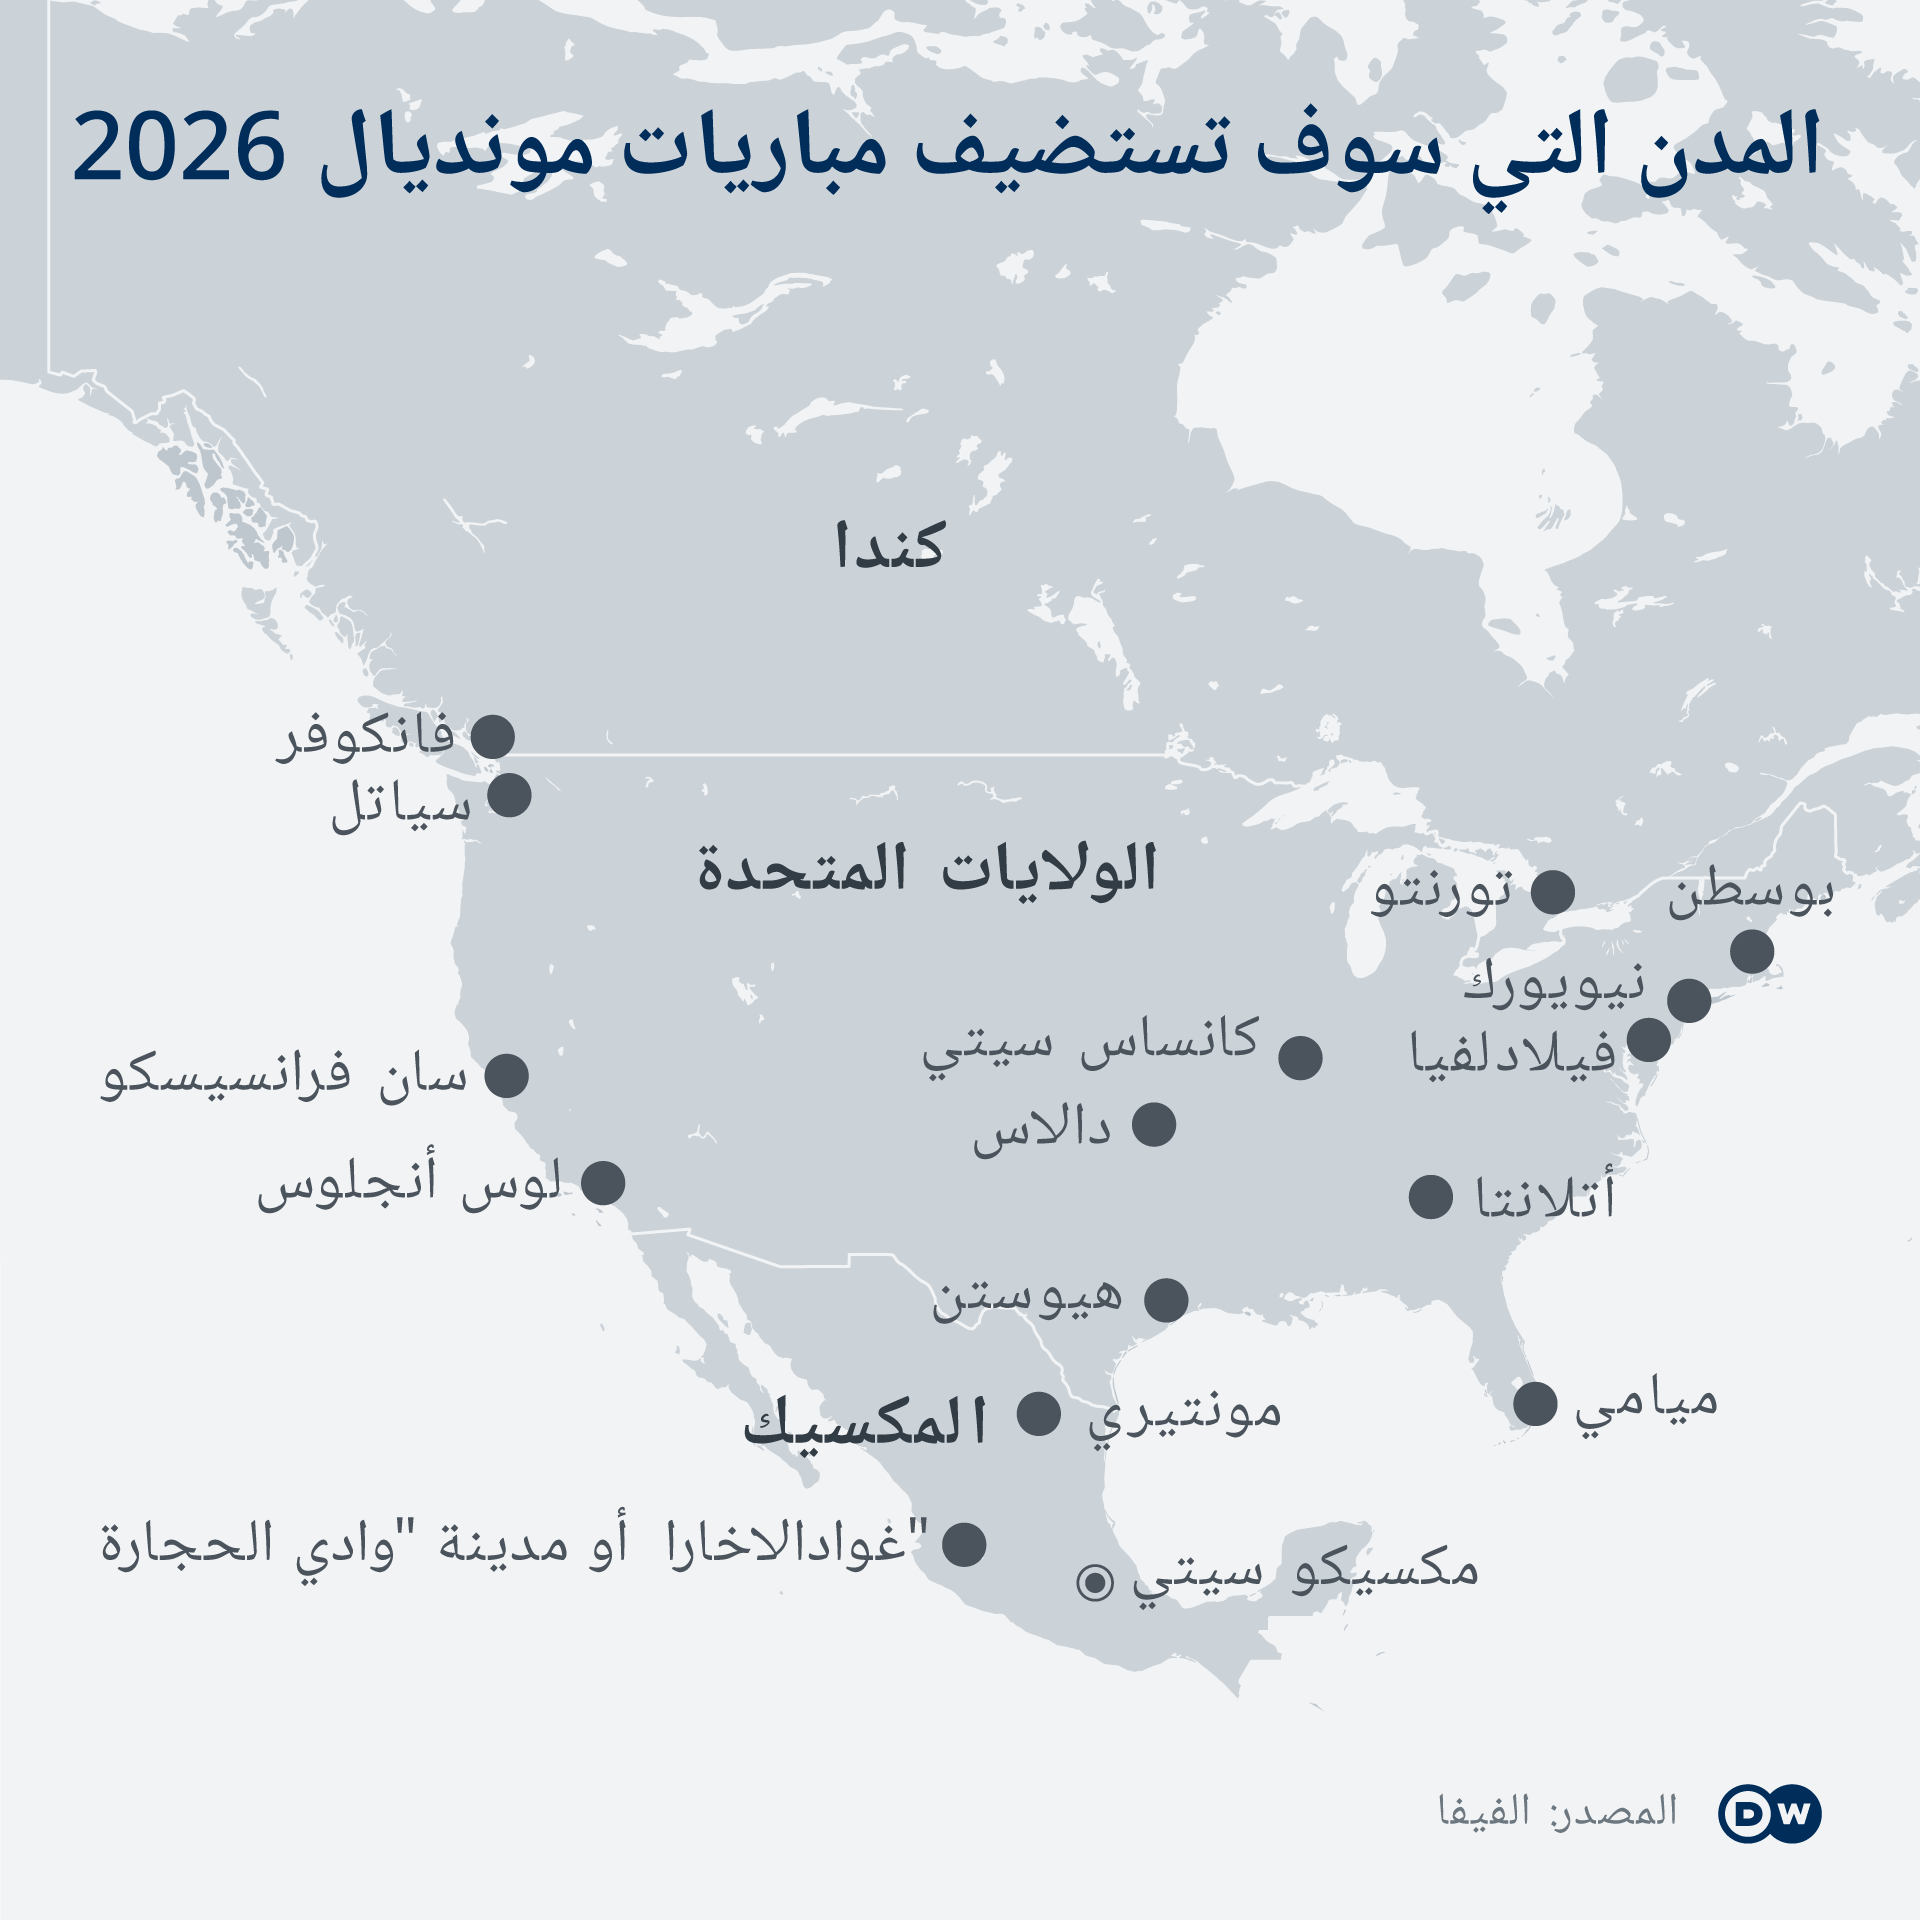 المدن التي تستضيف مباريات كأس العالم 2026.png